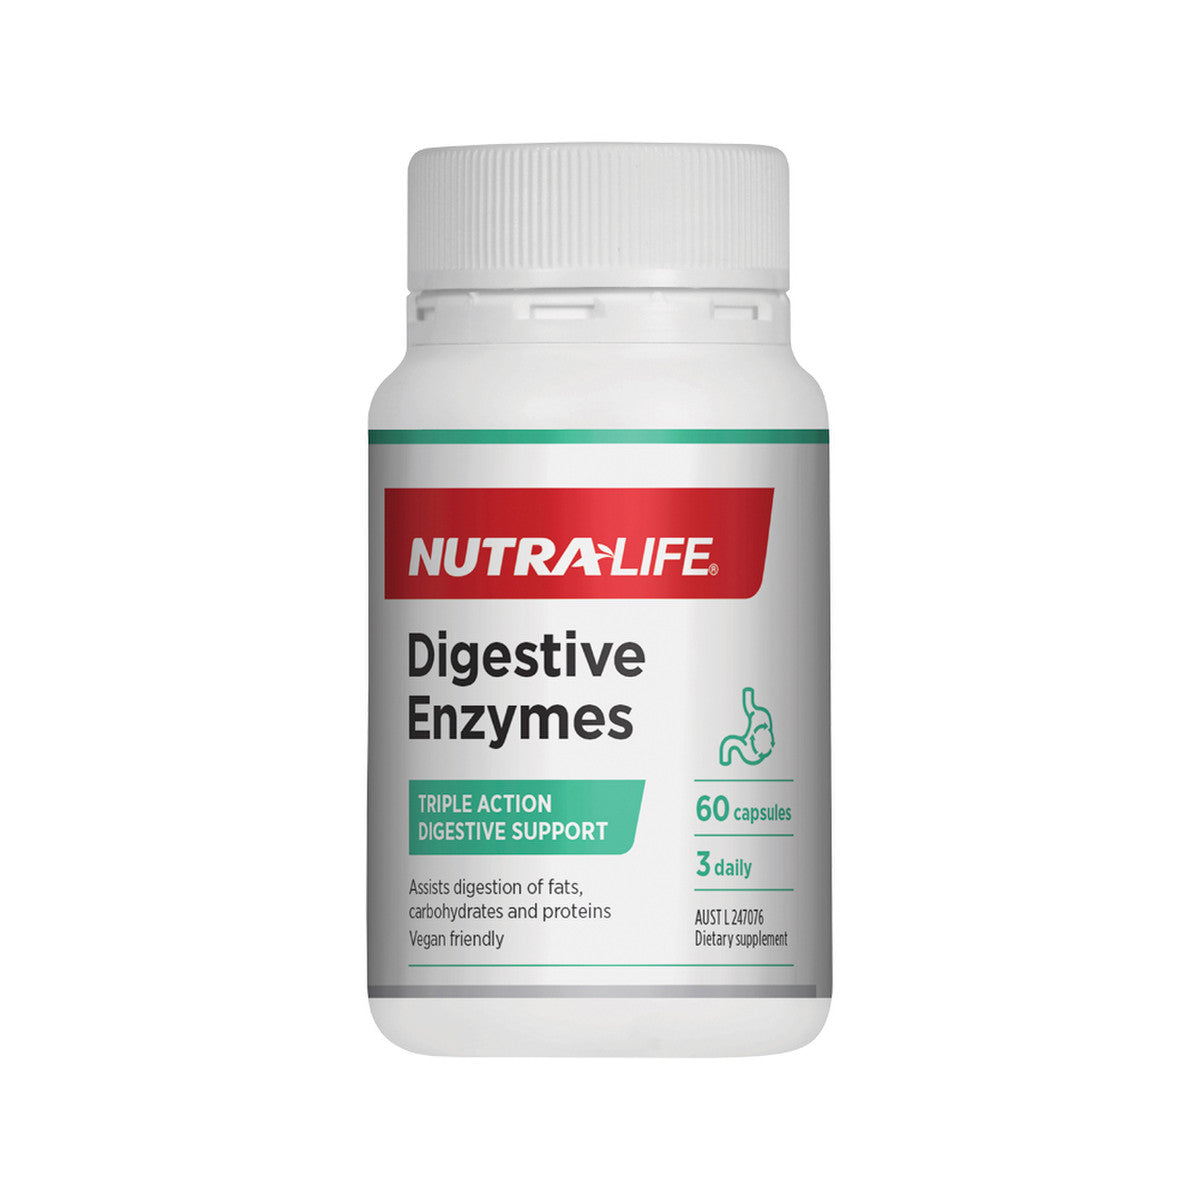 NutraLife - Digestive Enzymes